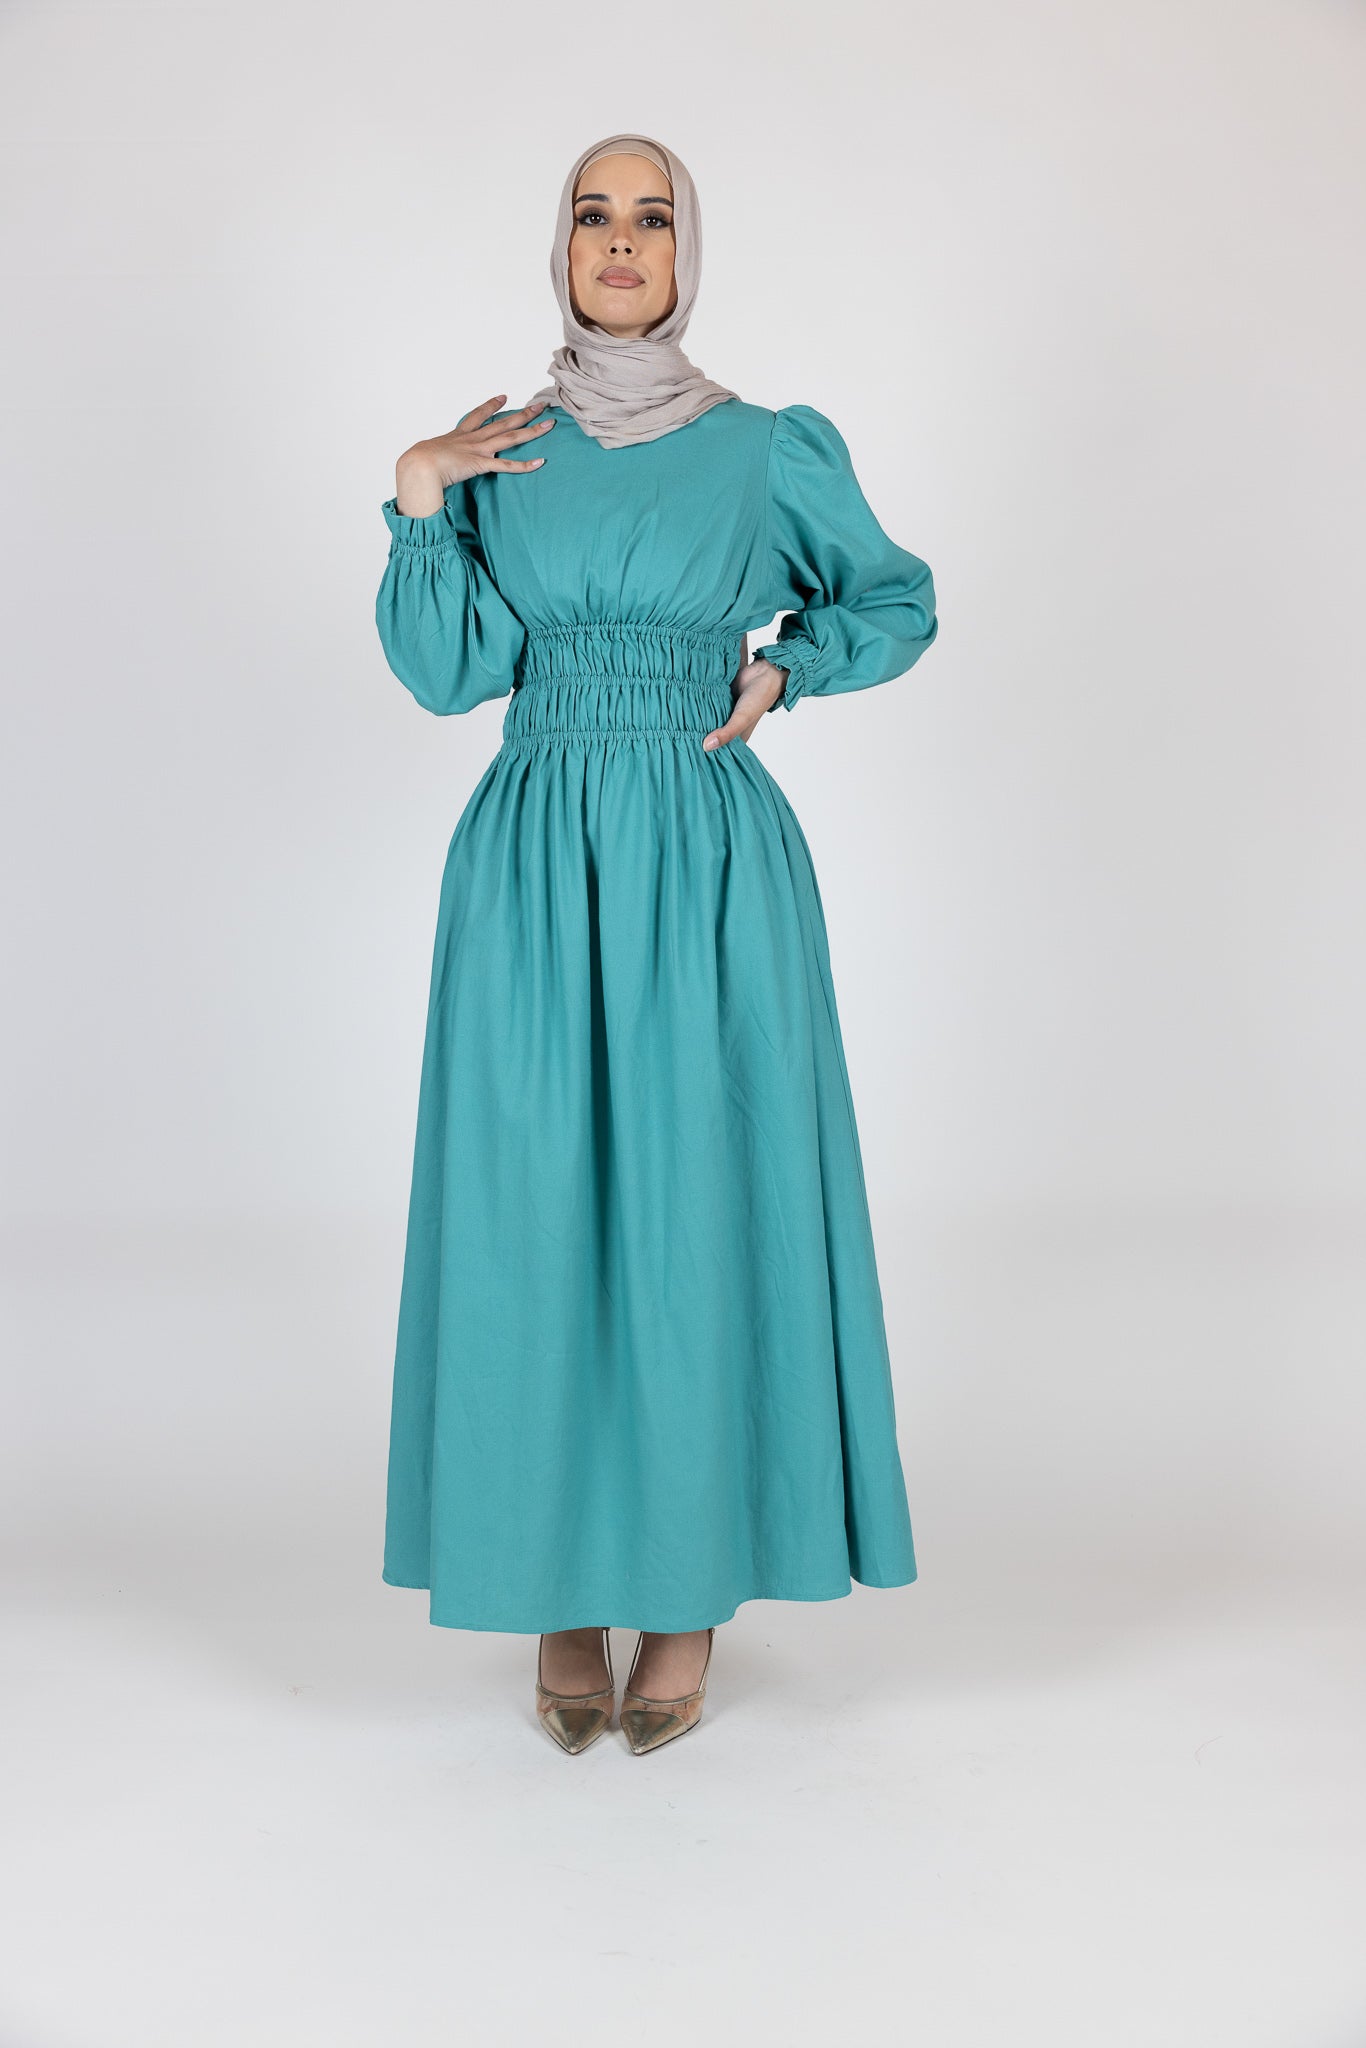 M7993Turquoise-dress-abaya